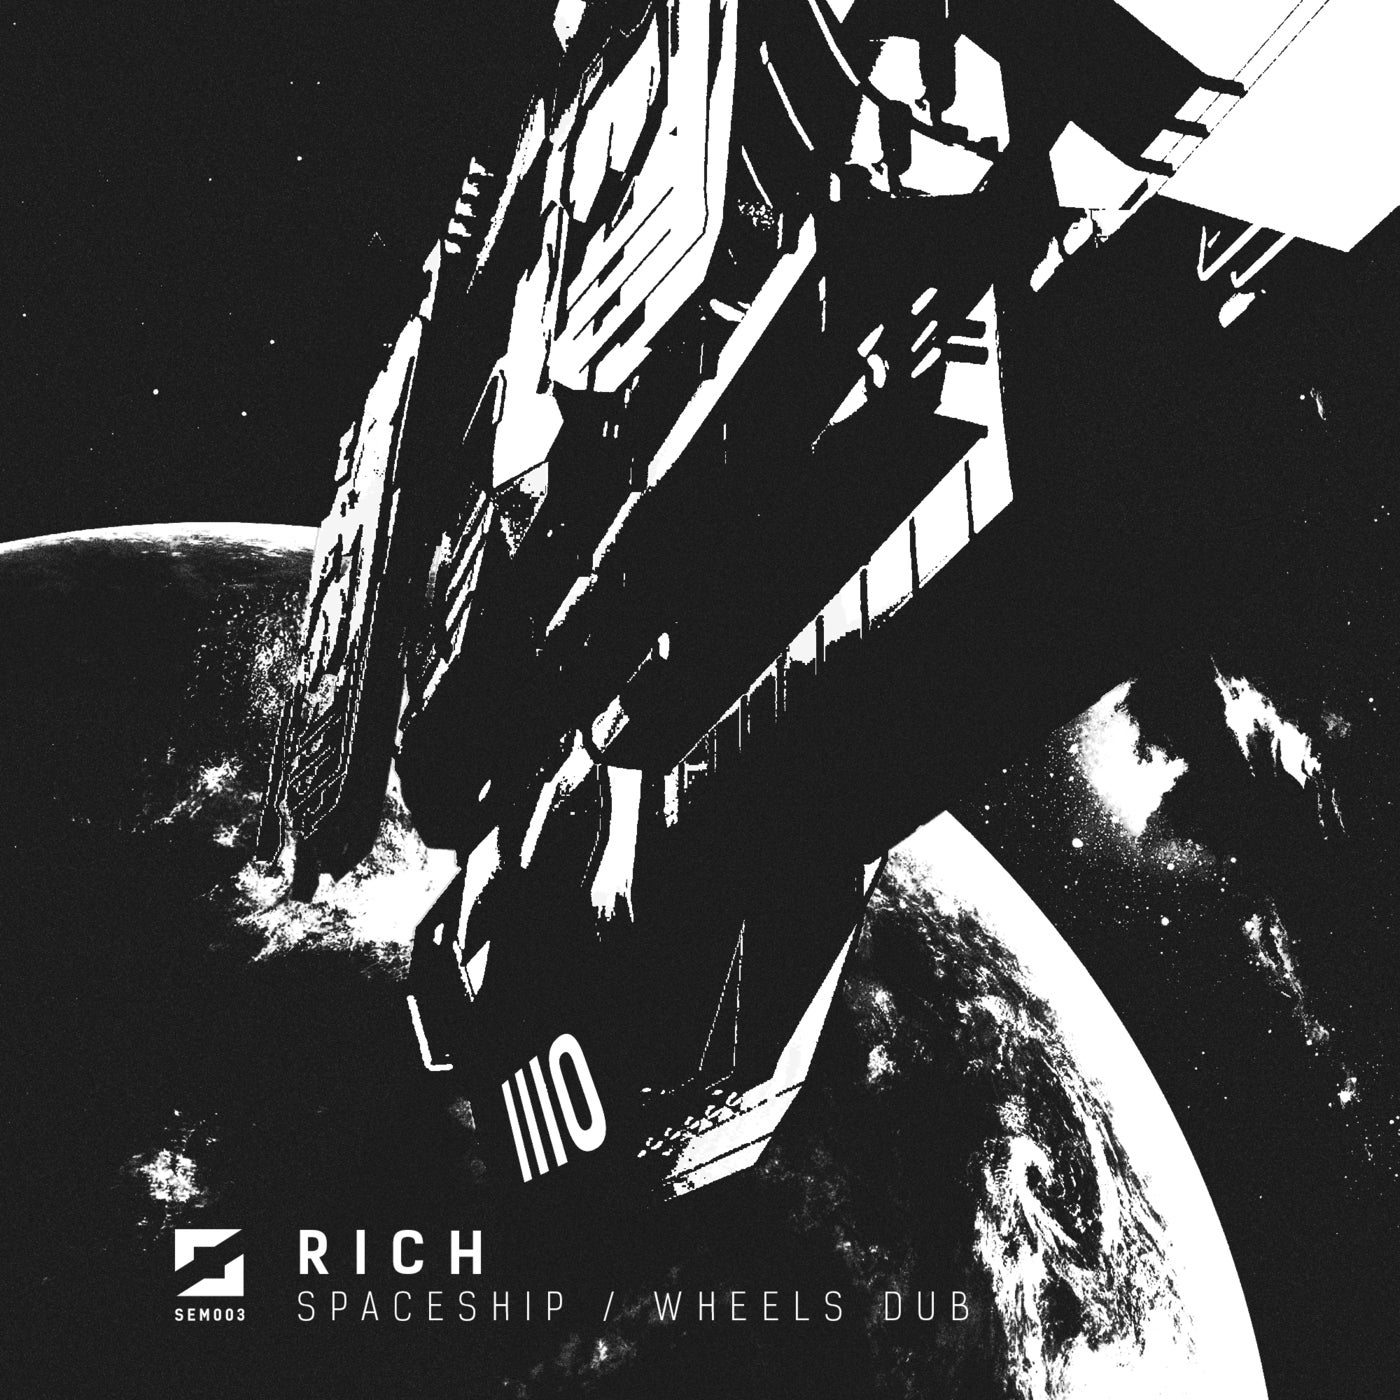 Spaceship / Wheels Dub